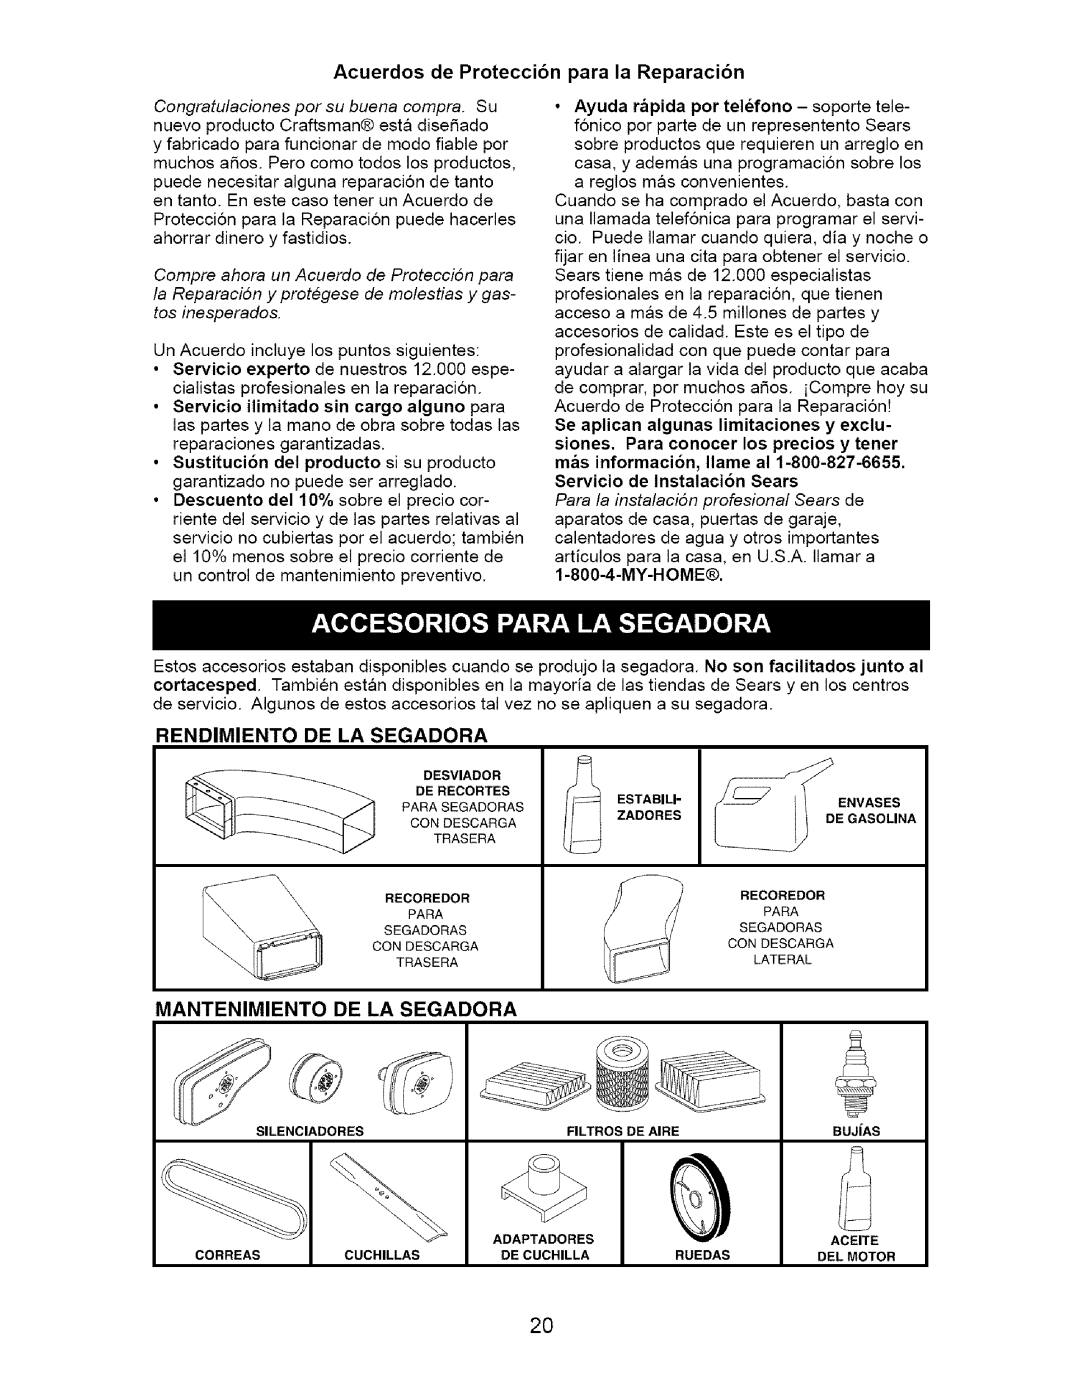 Craftsman 917.37134 owner manual Acuerdos de Protecci6n para la Reparaci6n, My-Home, Rendimiento De La Segadora 